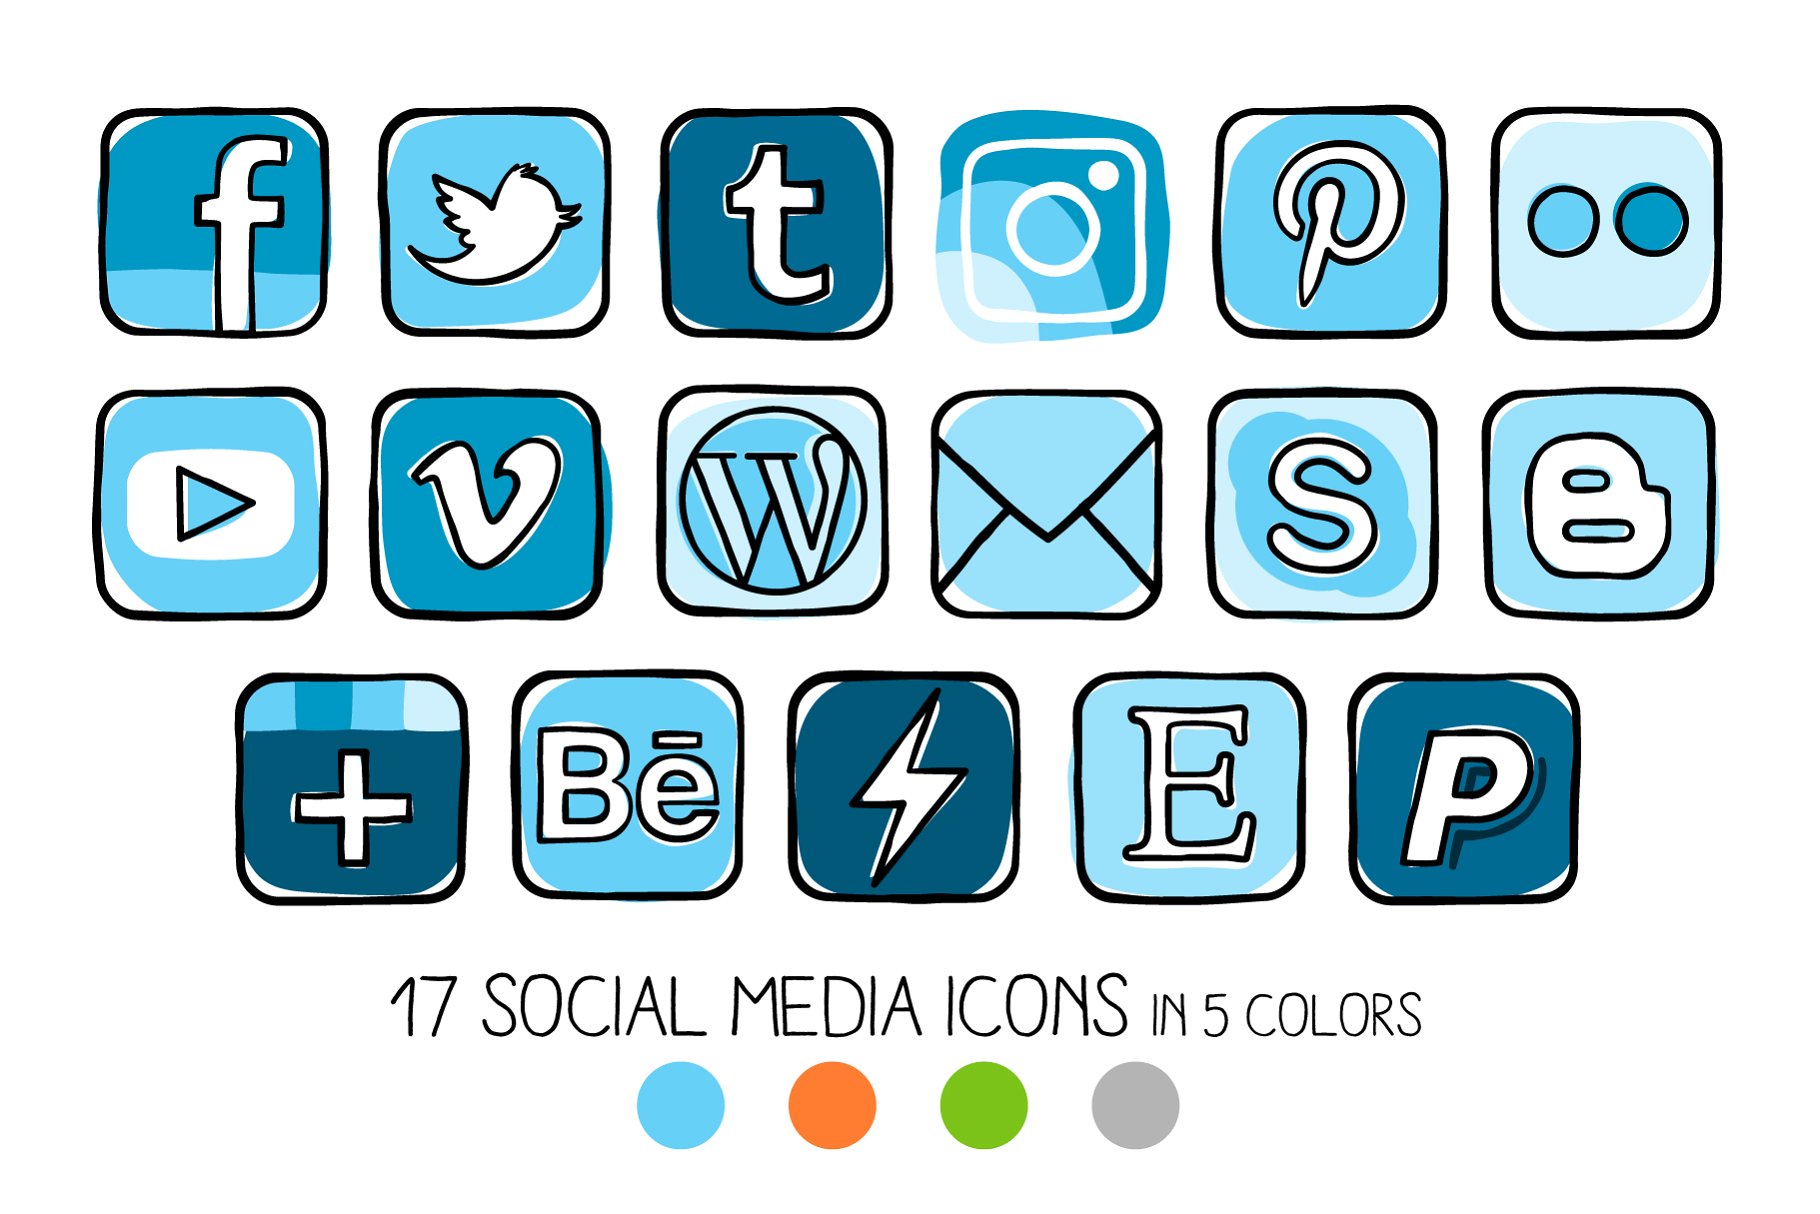 扭曲特效社交媒体图标 Guache effect social media icons插图(3)